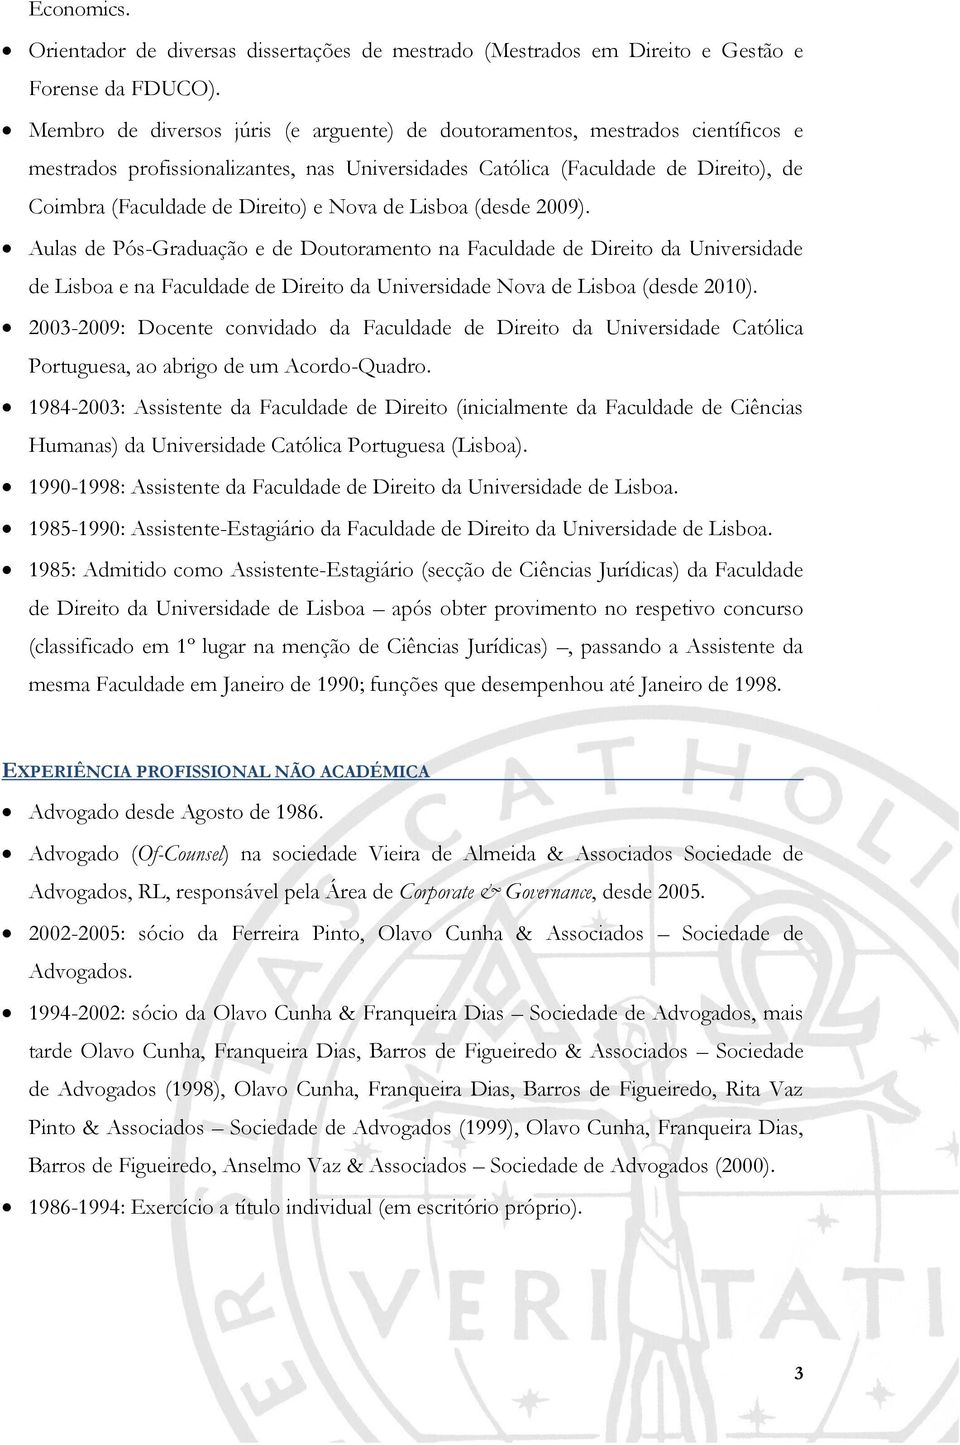 Nova de Lisboa (desde 2009). Aulas de Pós-Graduação e de Doutoramento na Faculdade de Direito da Universidade de Lisboa e na Faculdade de Direito da Universidade Nova de Lisboa (desde 2010).